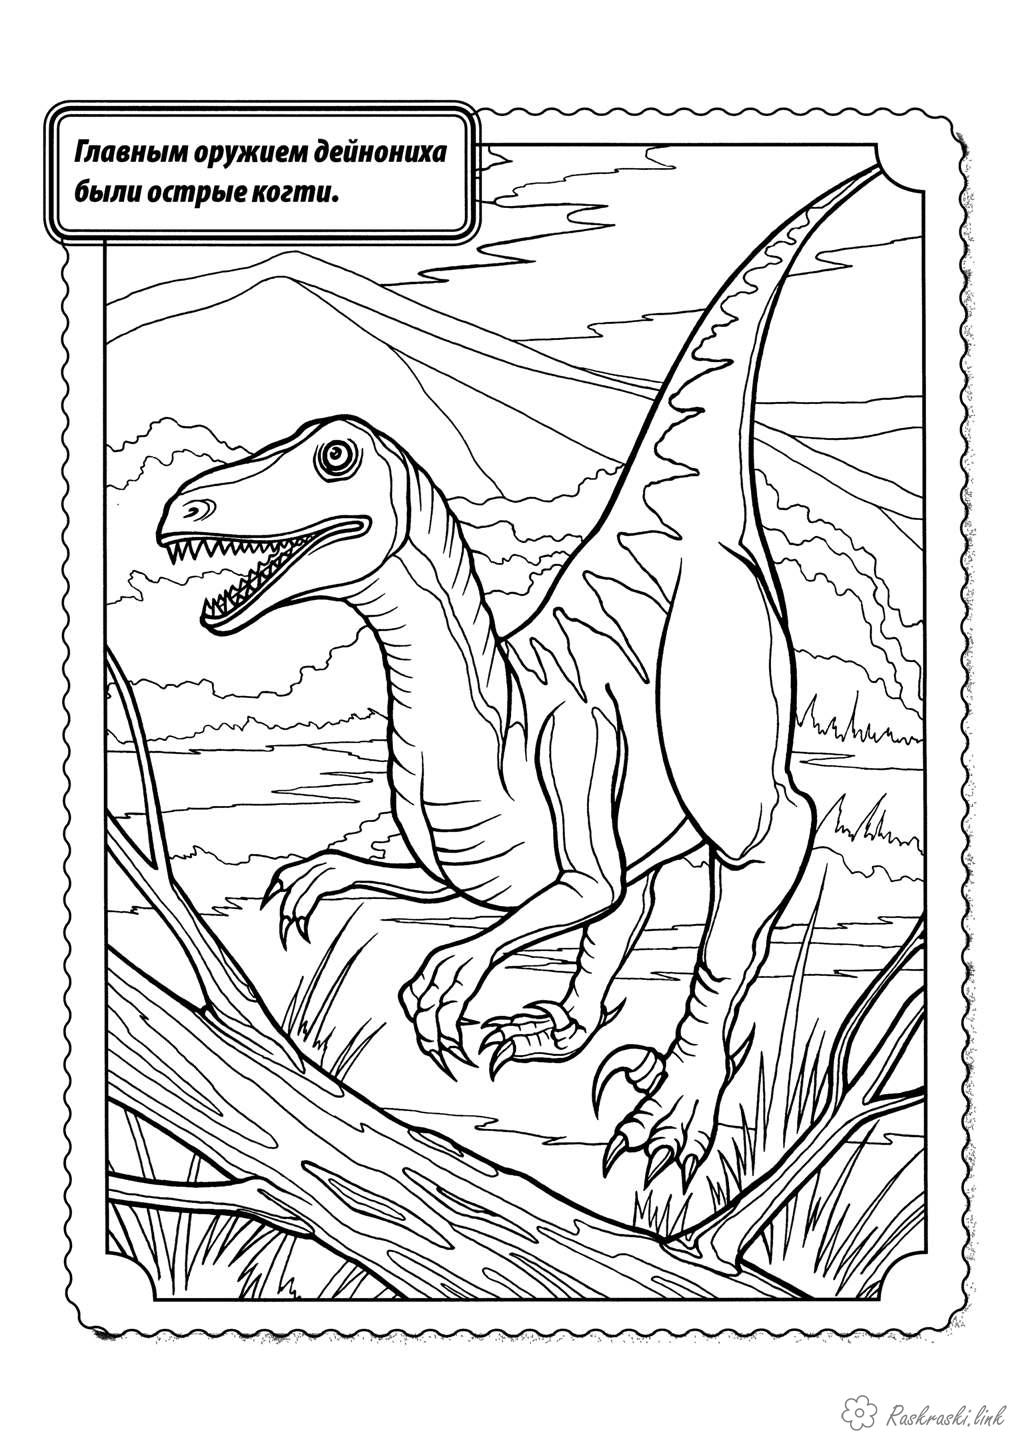 Розмальовки розмальовка Рептилії, динозавр, дейноніх, хижак, кігті